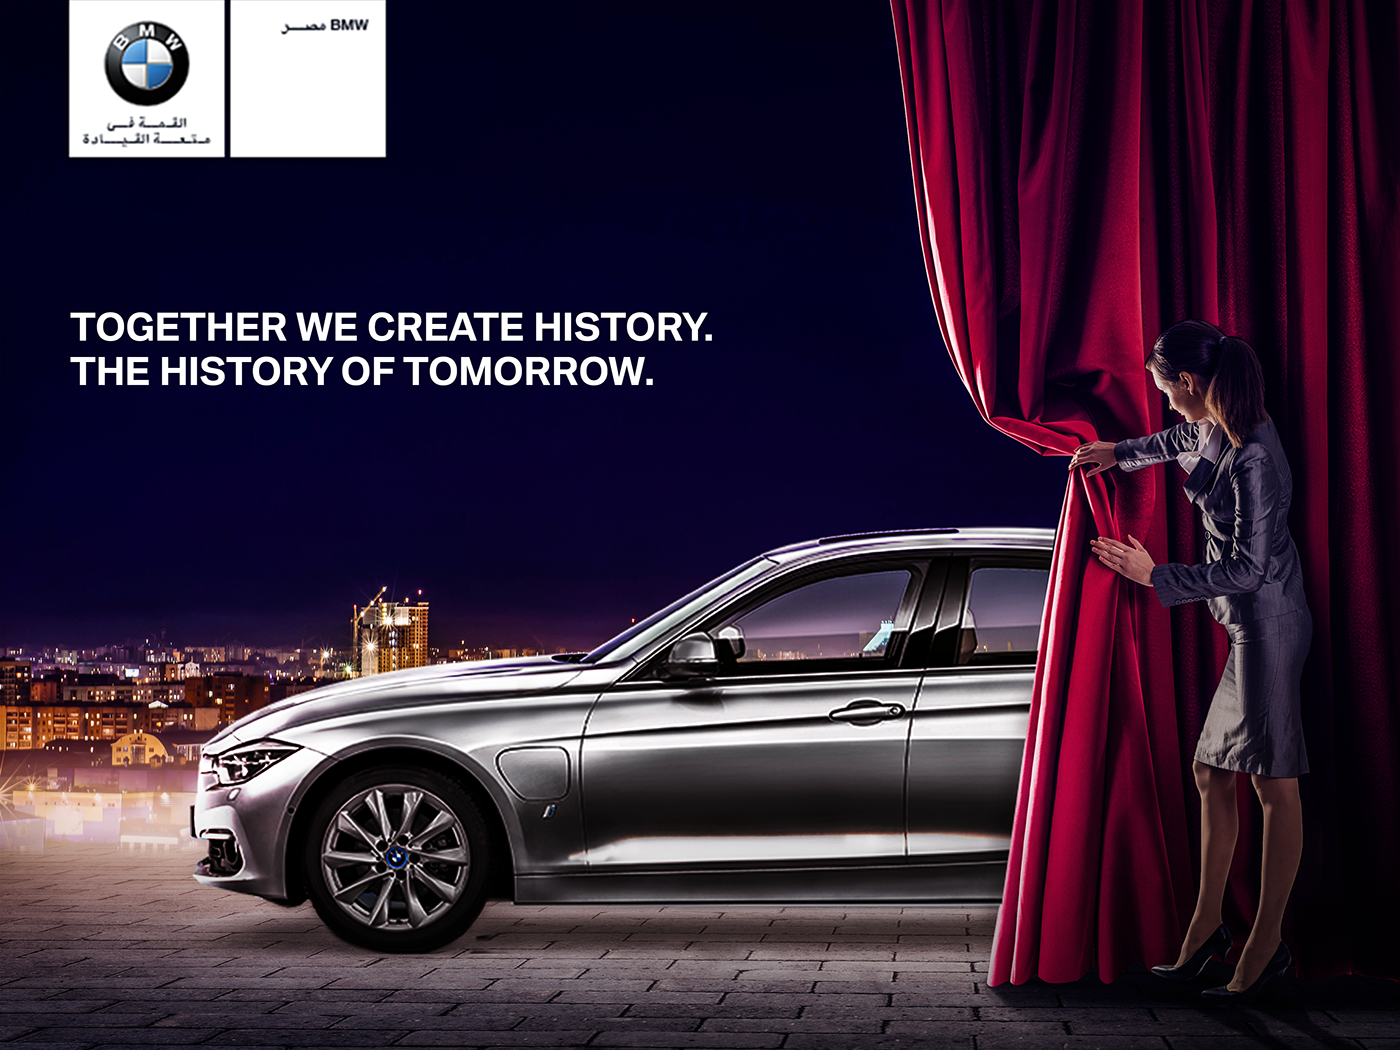 Слоган мерседес. Реклама на машине. Печатная реклама автомобилей. Слоганы машин. Рекламный плакат BMW.